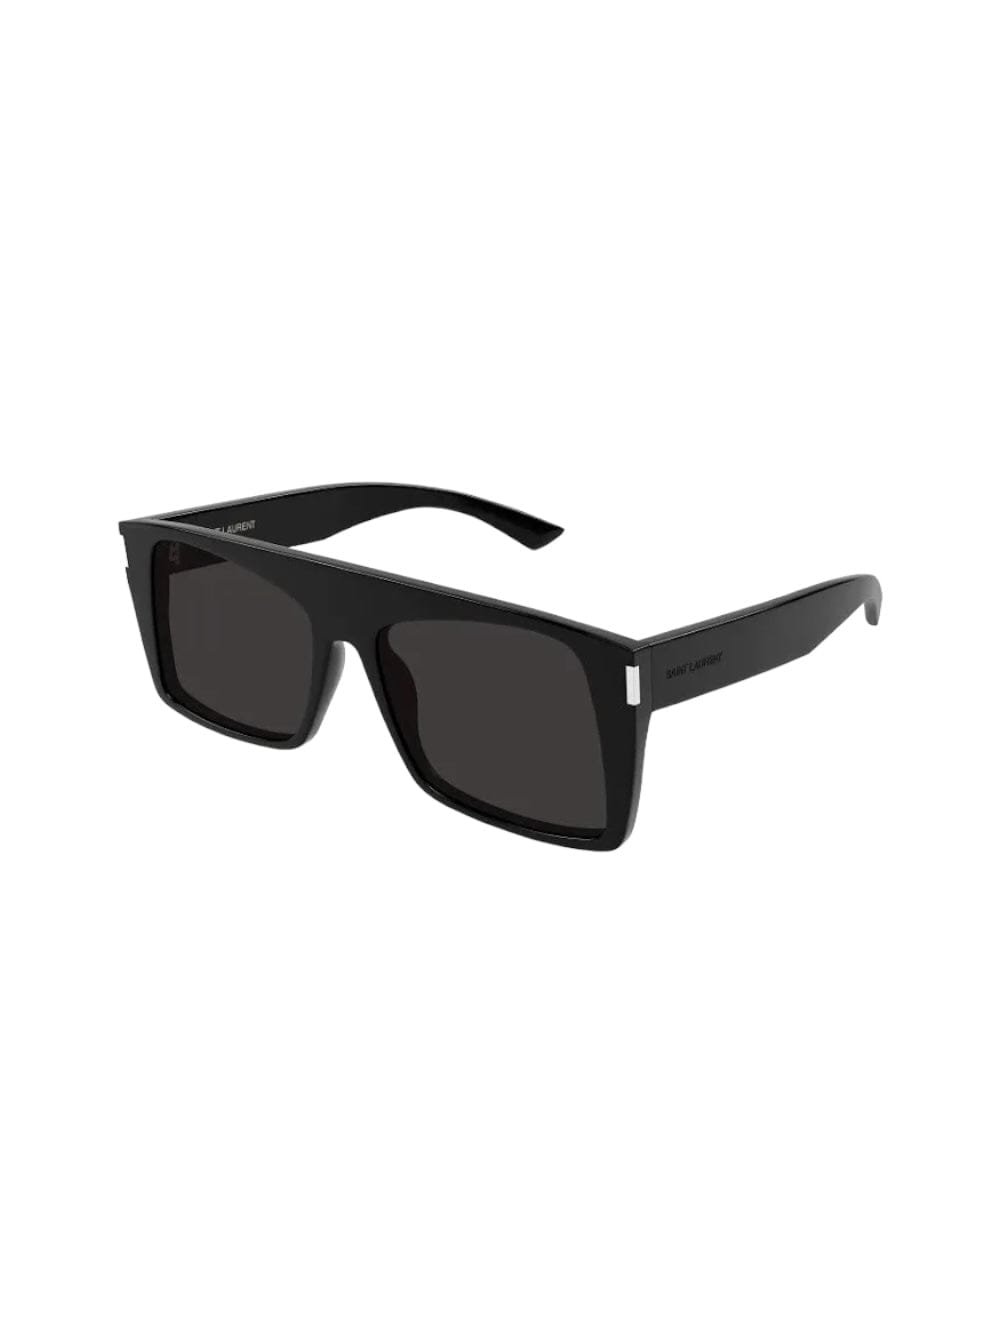 Sl 651 - Vitti Sunglasses